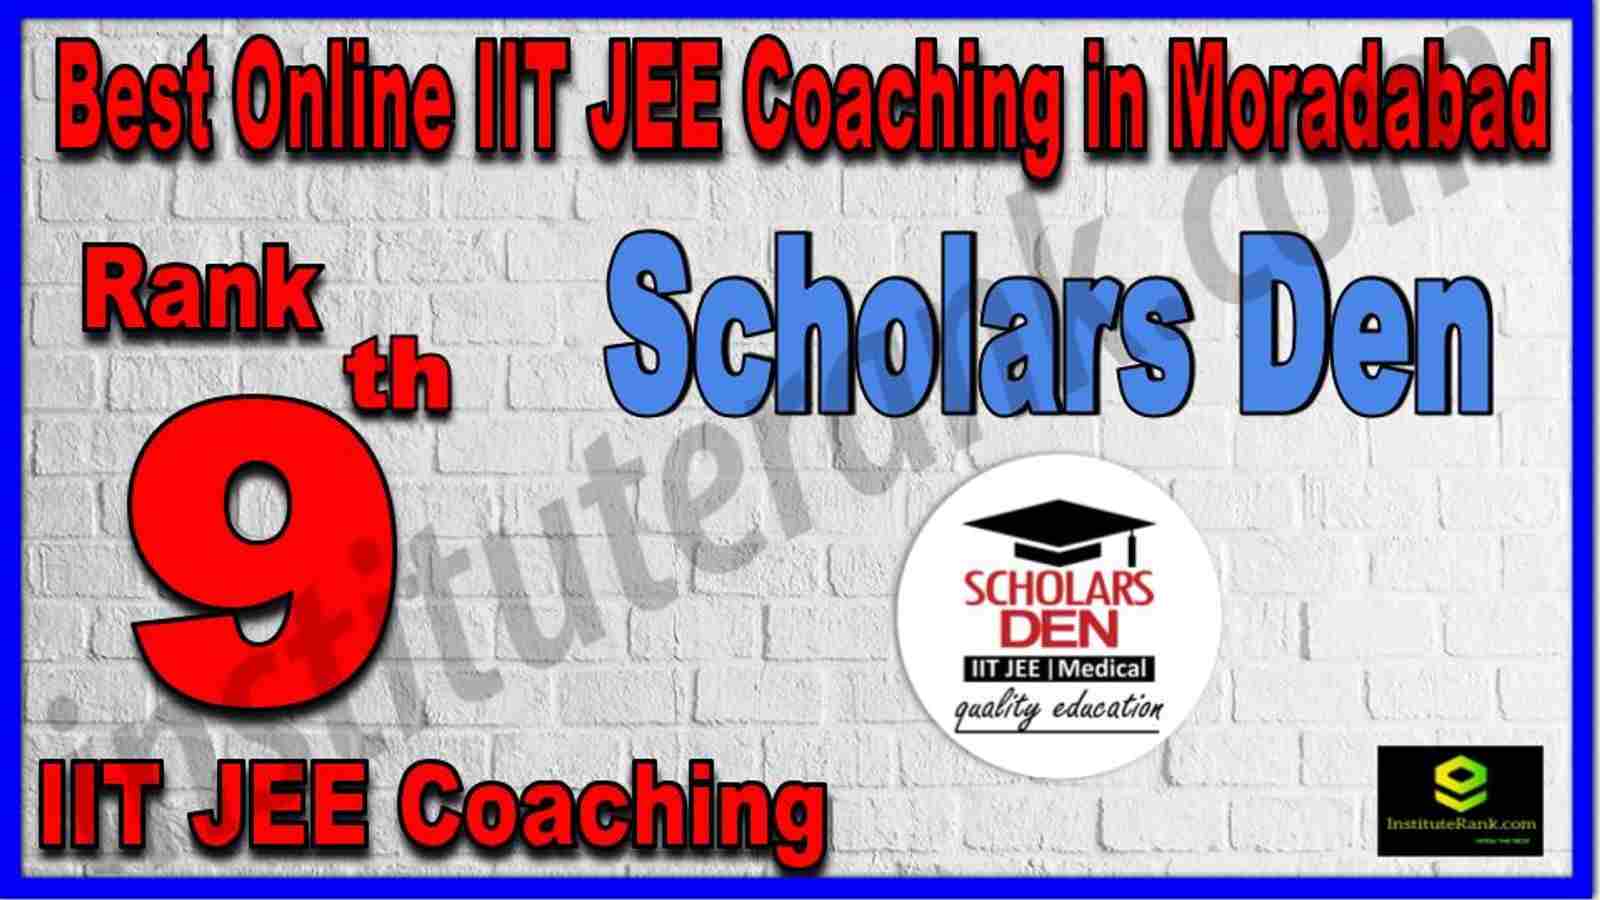 Rank 9th Best Online IIT JEE Coaching in Moradabad